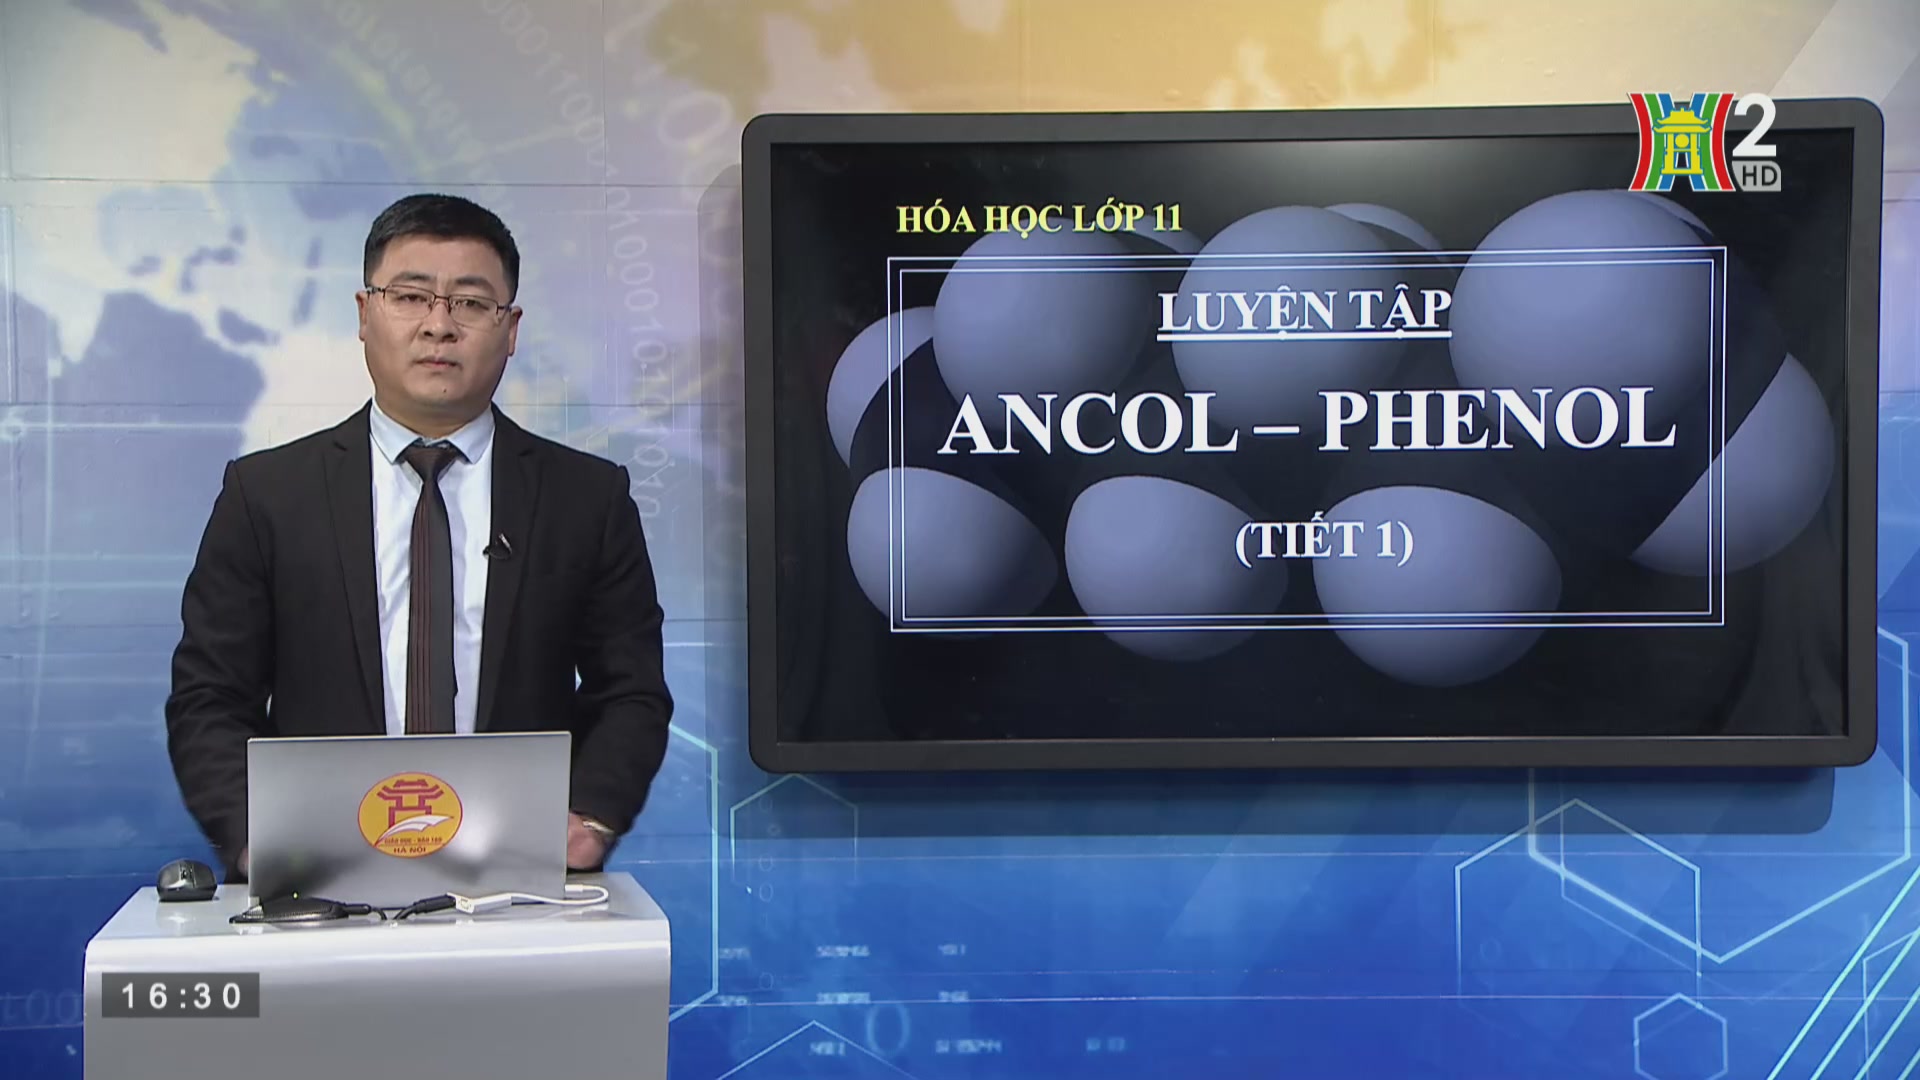 Hóa học lớp 11: Luyện tâp Ancol - Phenol ( 16h30 ngày 12/5/2020)